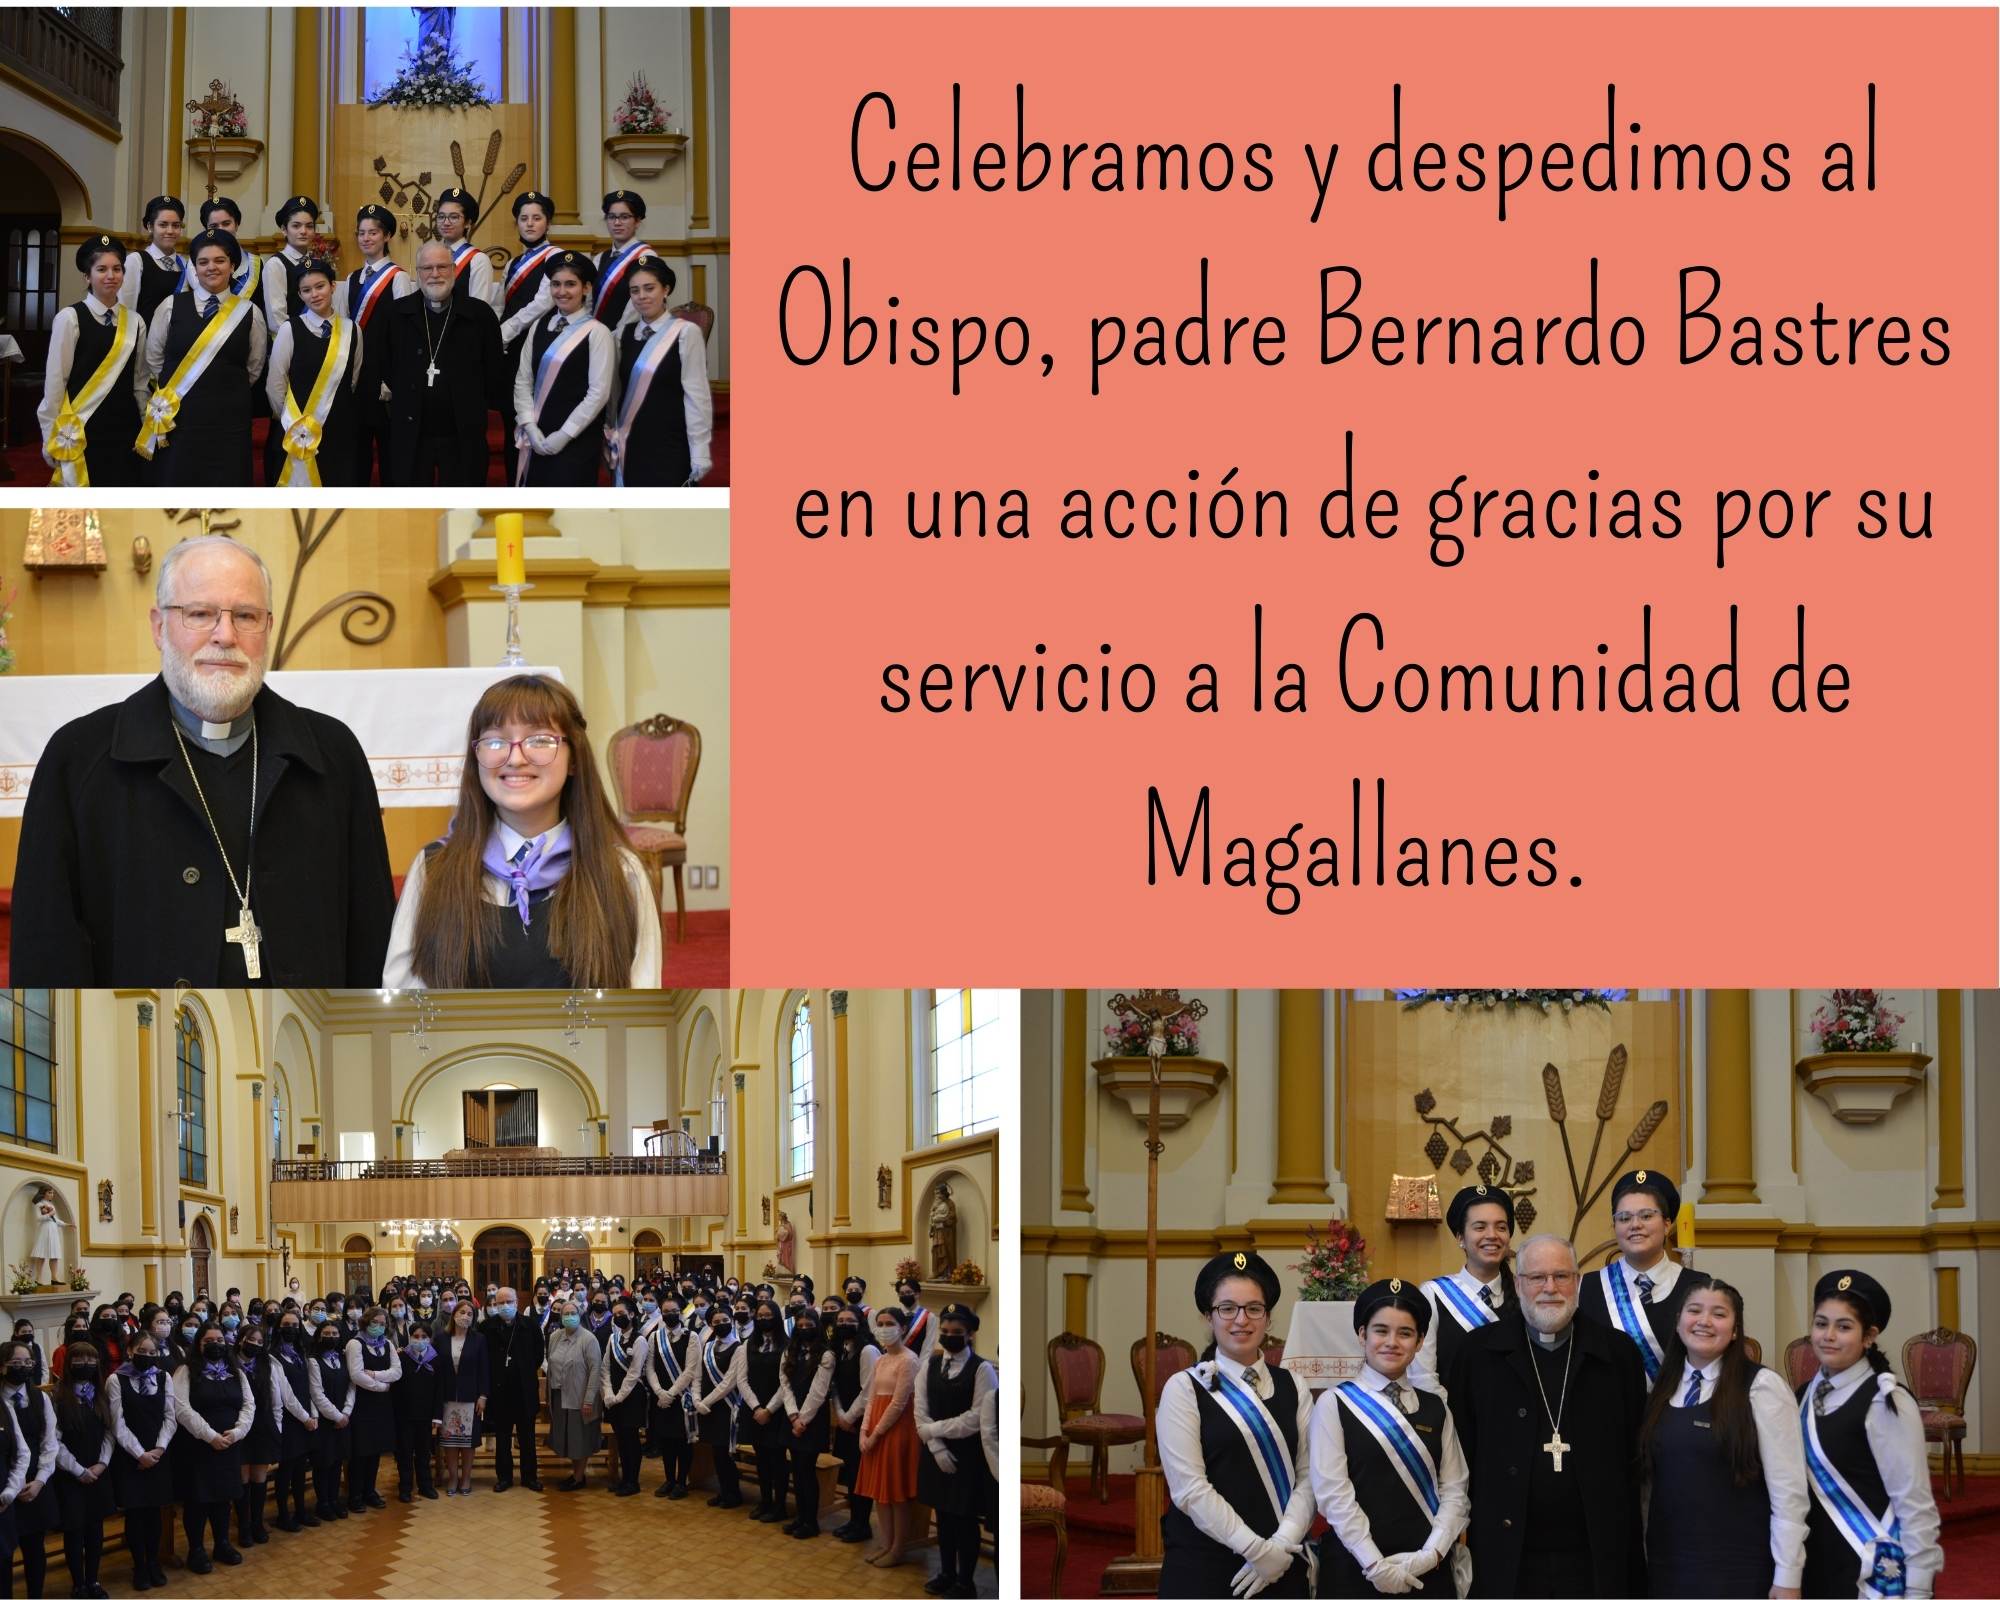 Celebramos_y_despedimos_al_Obispo_padre_Bernardo_Bastres_en_una_acción_de_gracias_por_su_servicio_a_la_Comunidad_de_Magallanes._1.jpg